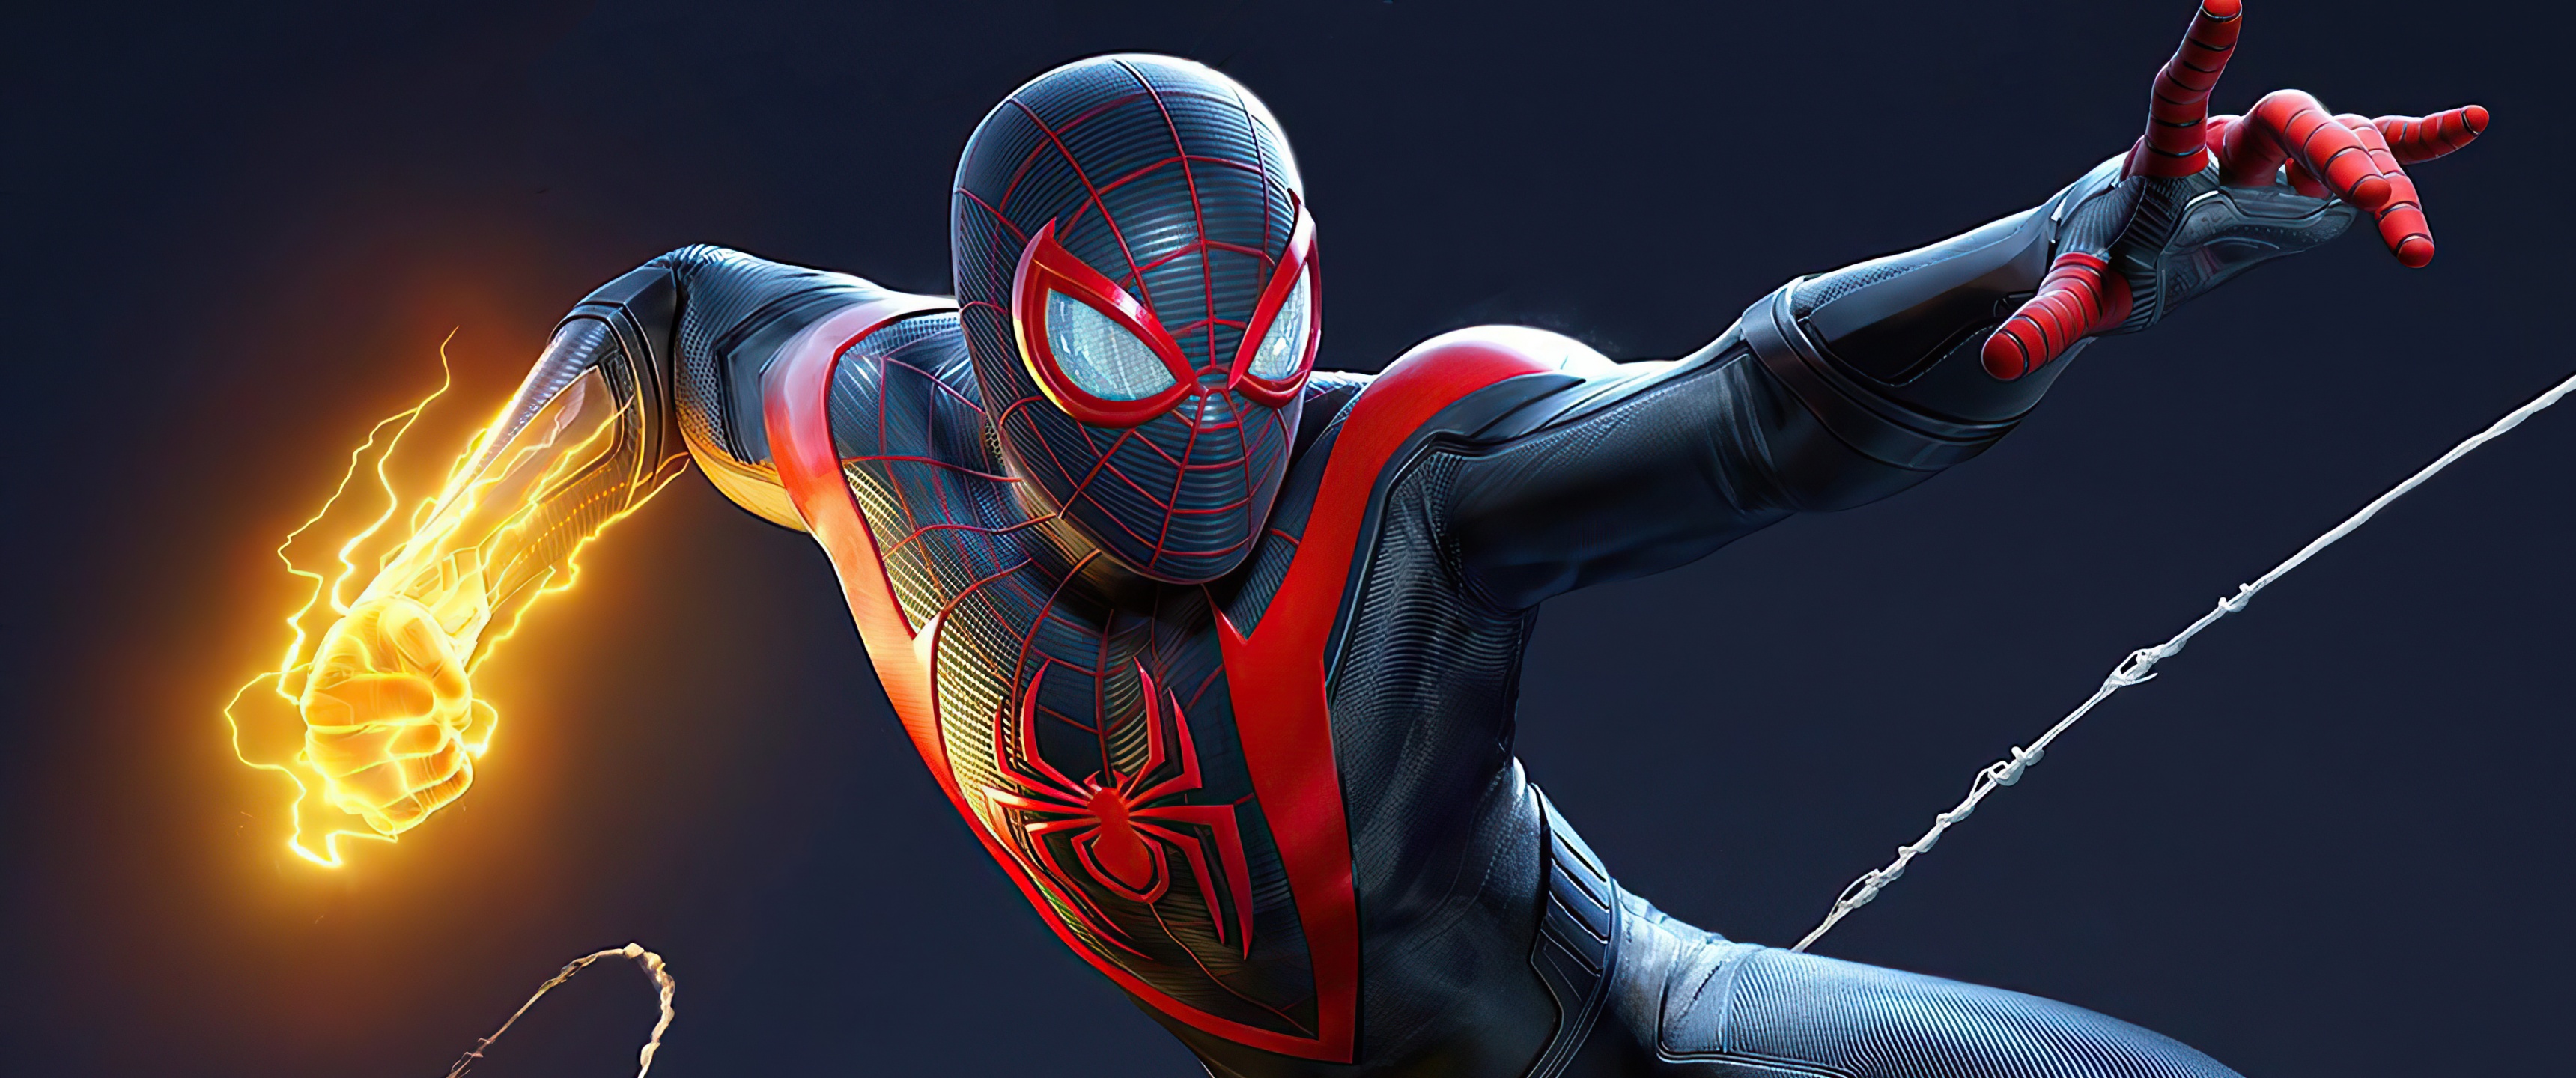 Marvel's Spider-Man 2 Wallpaper 4K